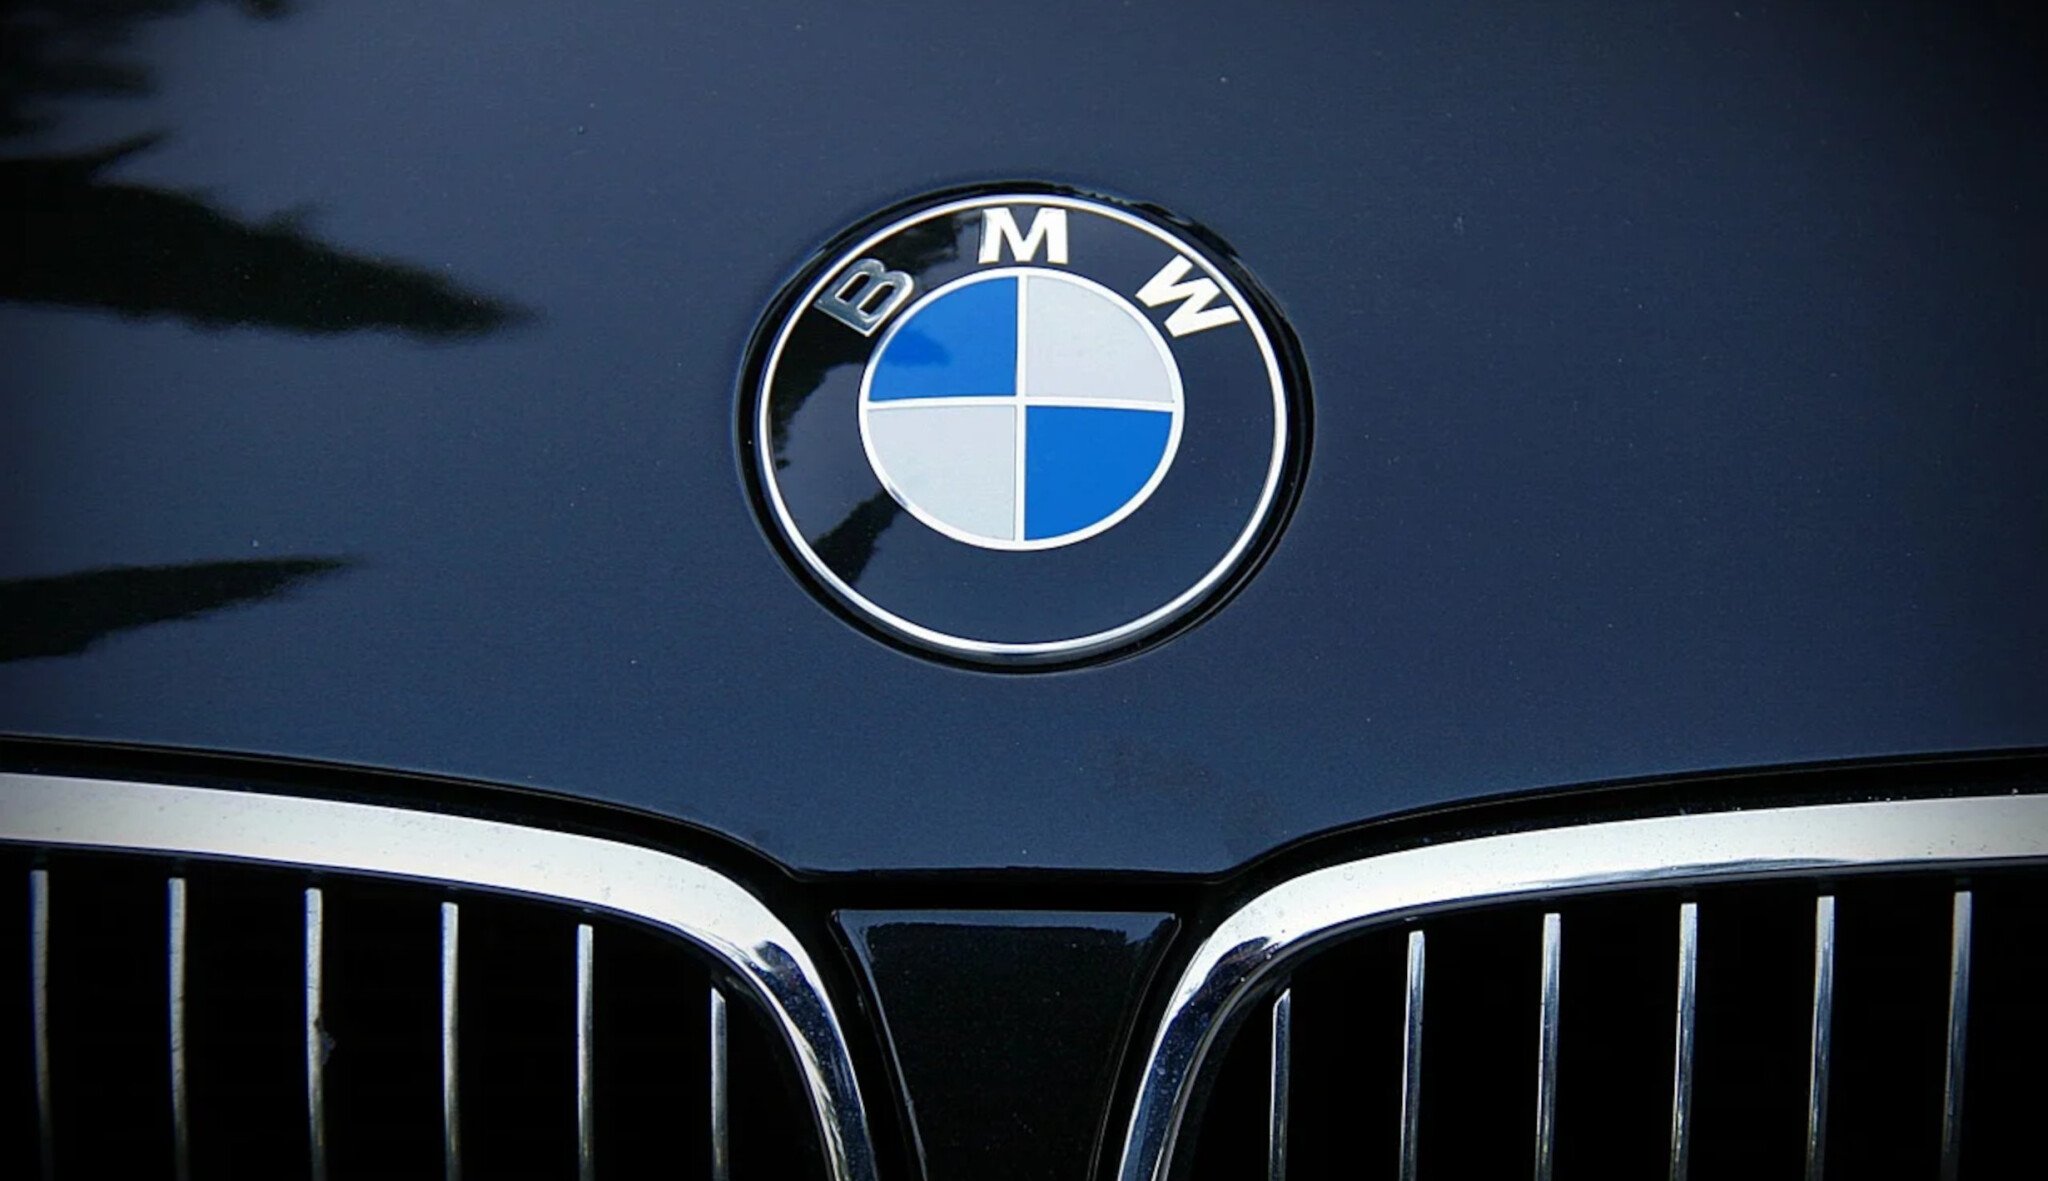 BMW zvýšilo provozní zisk téměř o pětinu. Vyšplhal přes 100 miliard korun